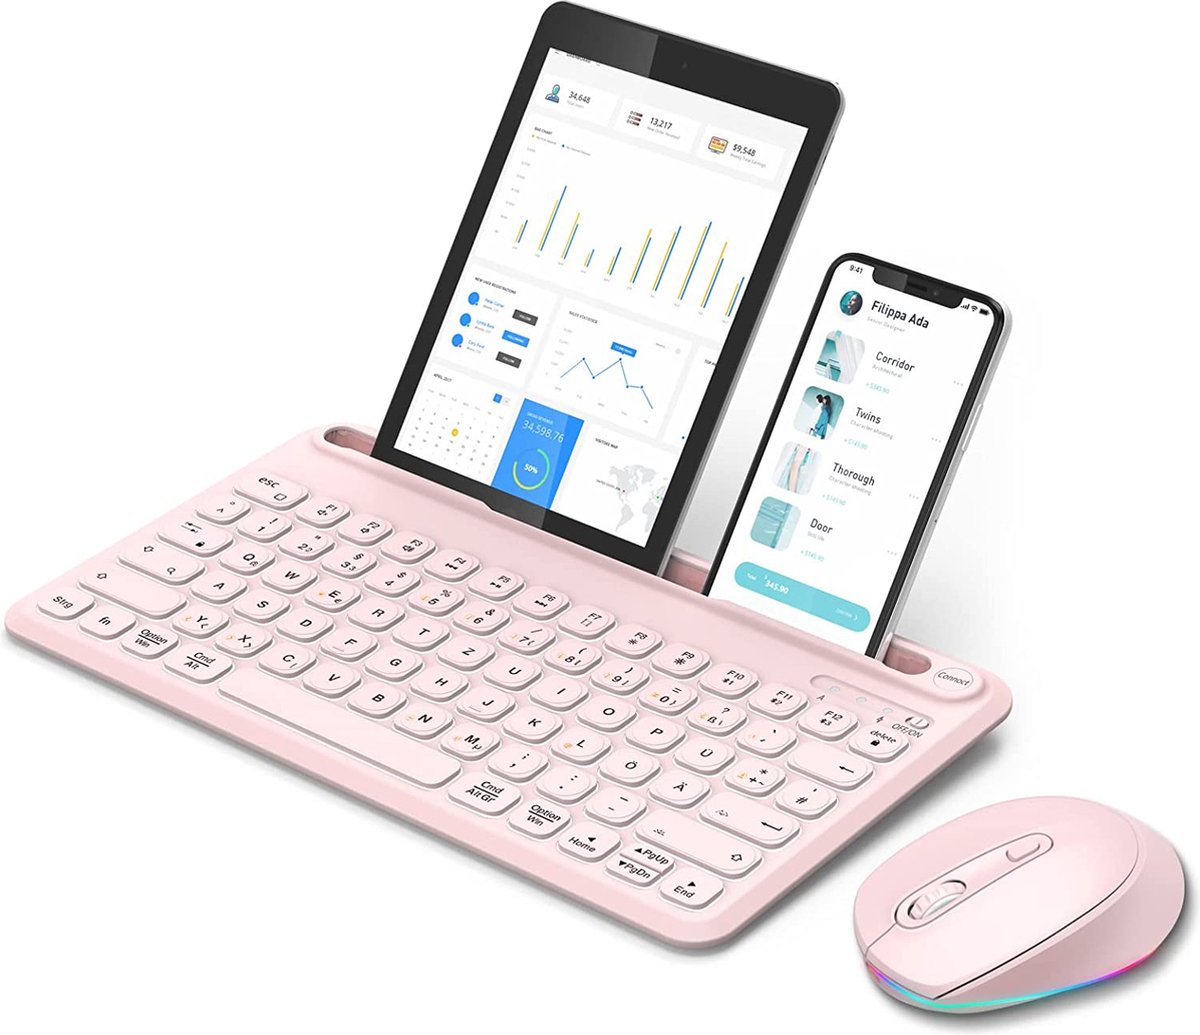 YSR- Bluetooth Toetsenbord Met Muis 3 Kanalen Verlicht Draadloos Toetsenbord Met Tablethouder Draadloos Toetsenbord Oplaadbaar QWERTZ Toetsenbord & RGB-Muis Voor iOS/Android/Windows Roze